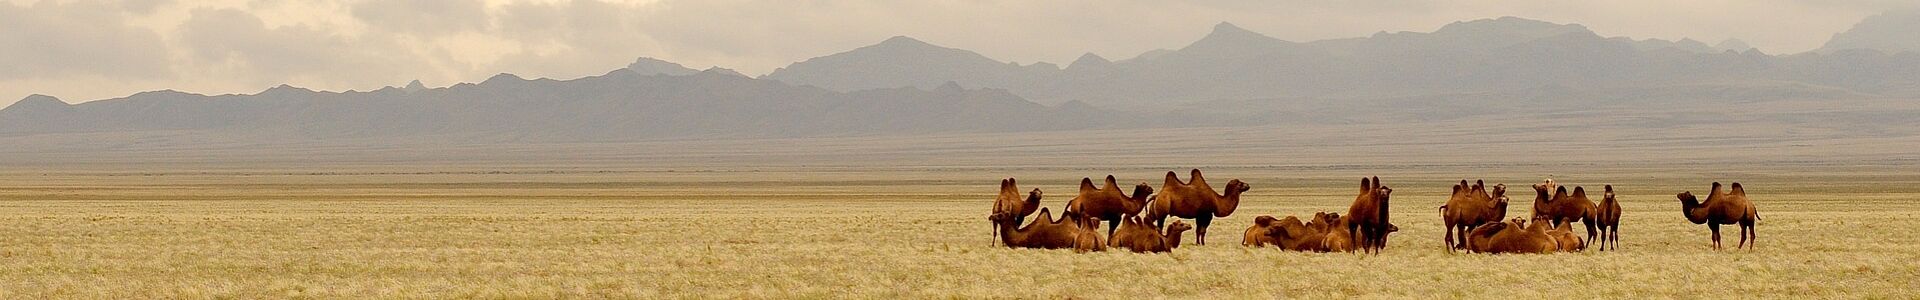 Kamele in der Steppe